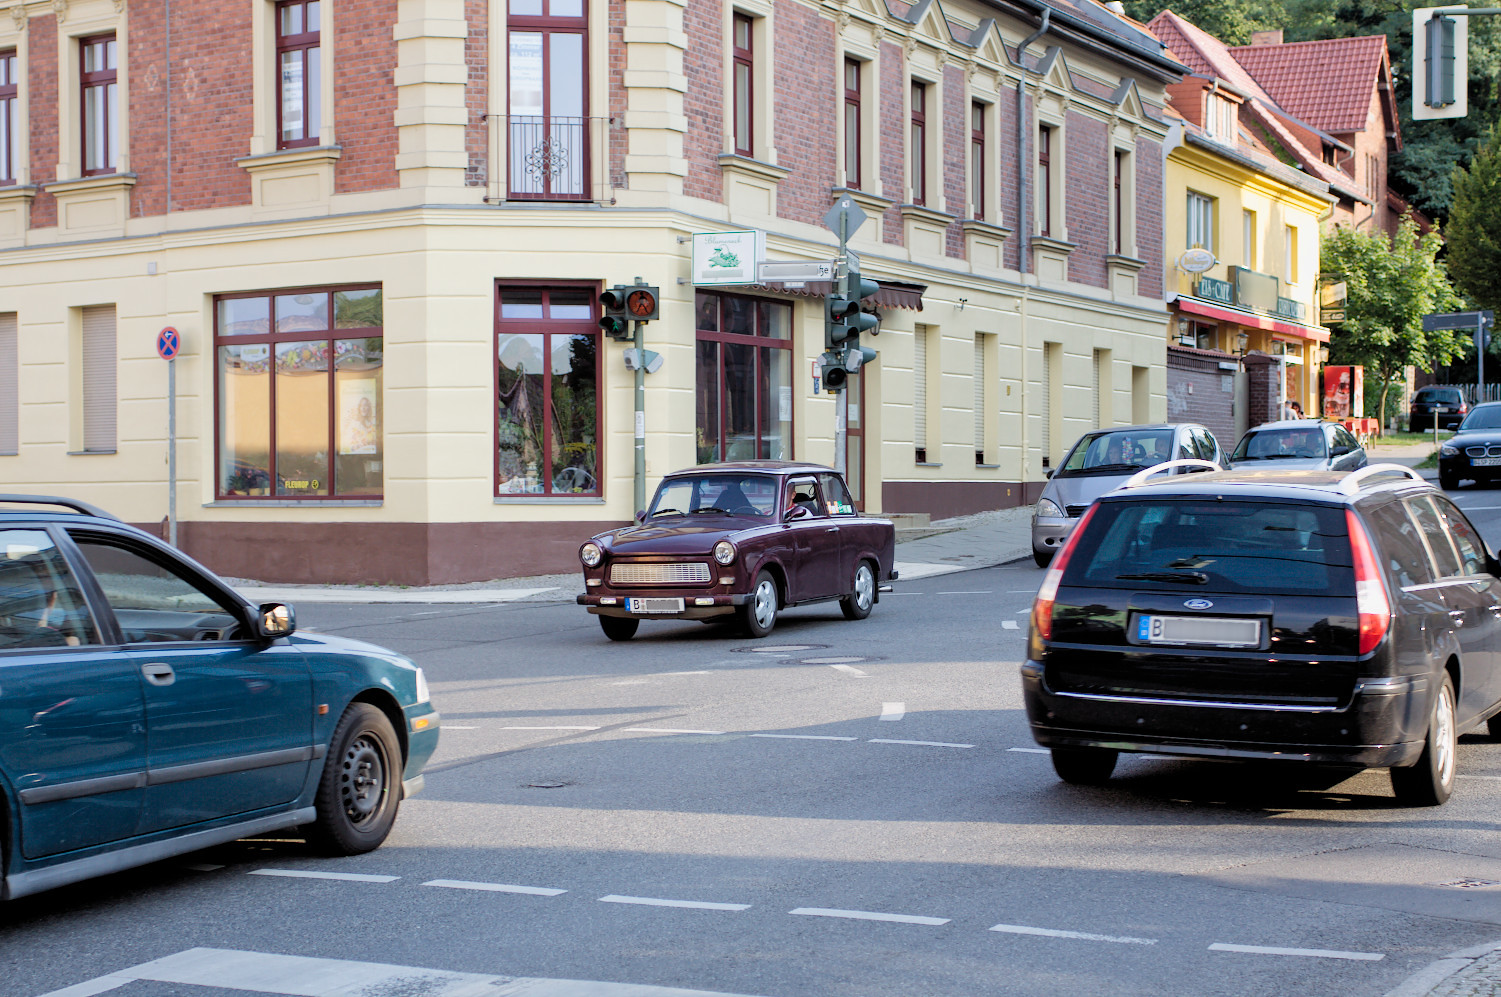 Konec nákupů v Polsku? Zákazy vjezdu pro starší vozy v Polsku platí i pro nás. Rozšiřují nízkoemisní zóny, mohou být kdekoli